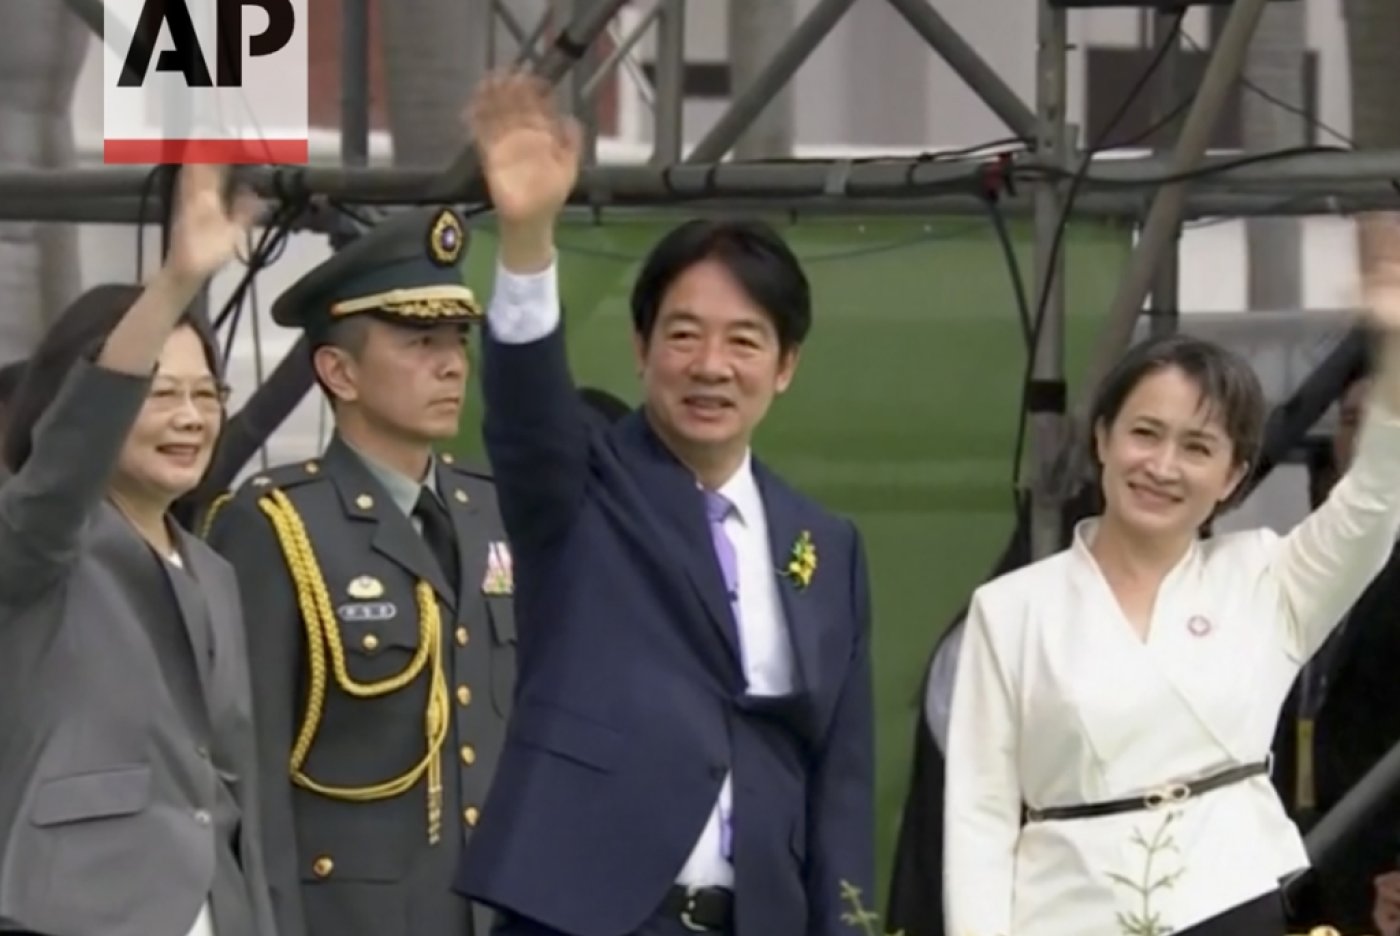 Le nouveau président Lai Ching-te, qui succède à Tsai Ing-wen, à gauche sur le cliché, a prêté serment avec la nouvelle vice-présidente Hsiao Bi-khim, à droite sur le cliché, au palais présidentiel de Taïpei. KEYSTONE